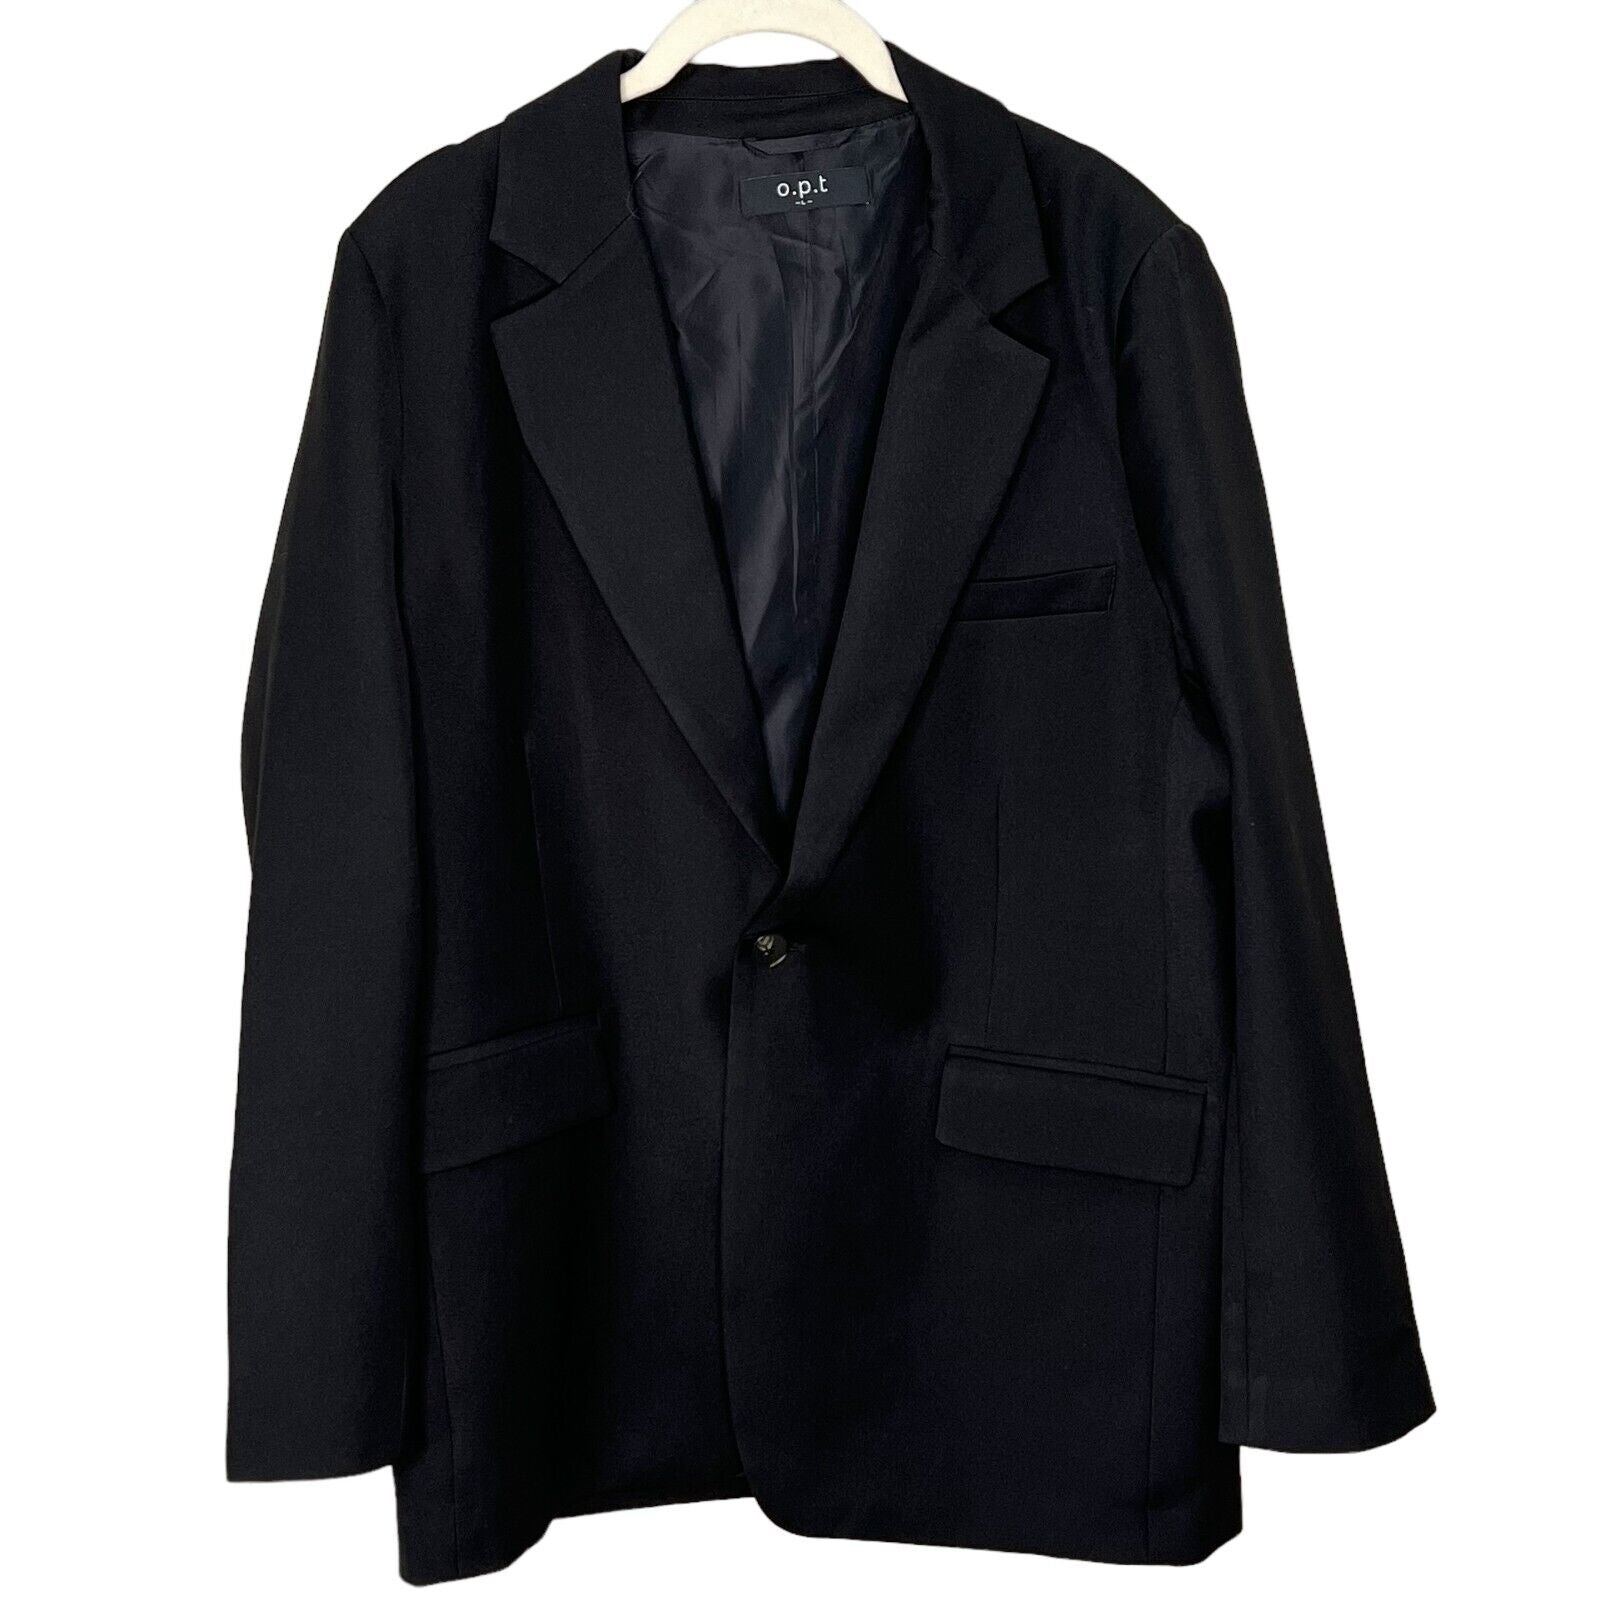 o.p.t Black Larsen Oversized Blazer Jacket Size Large $220